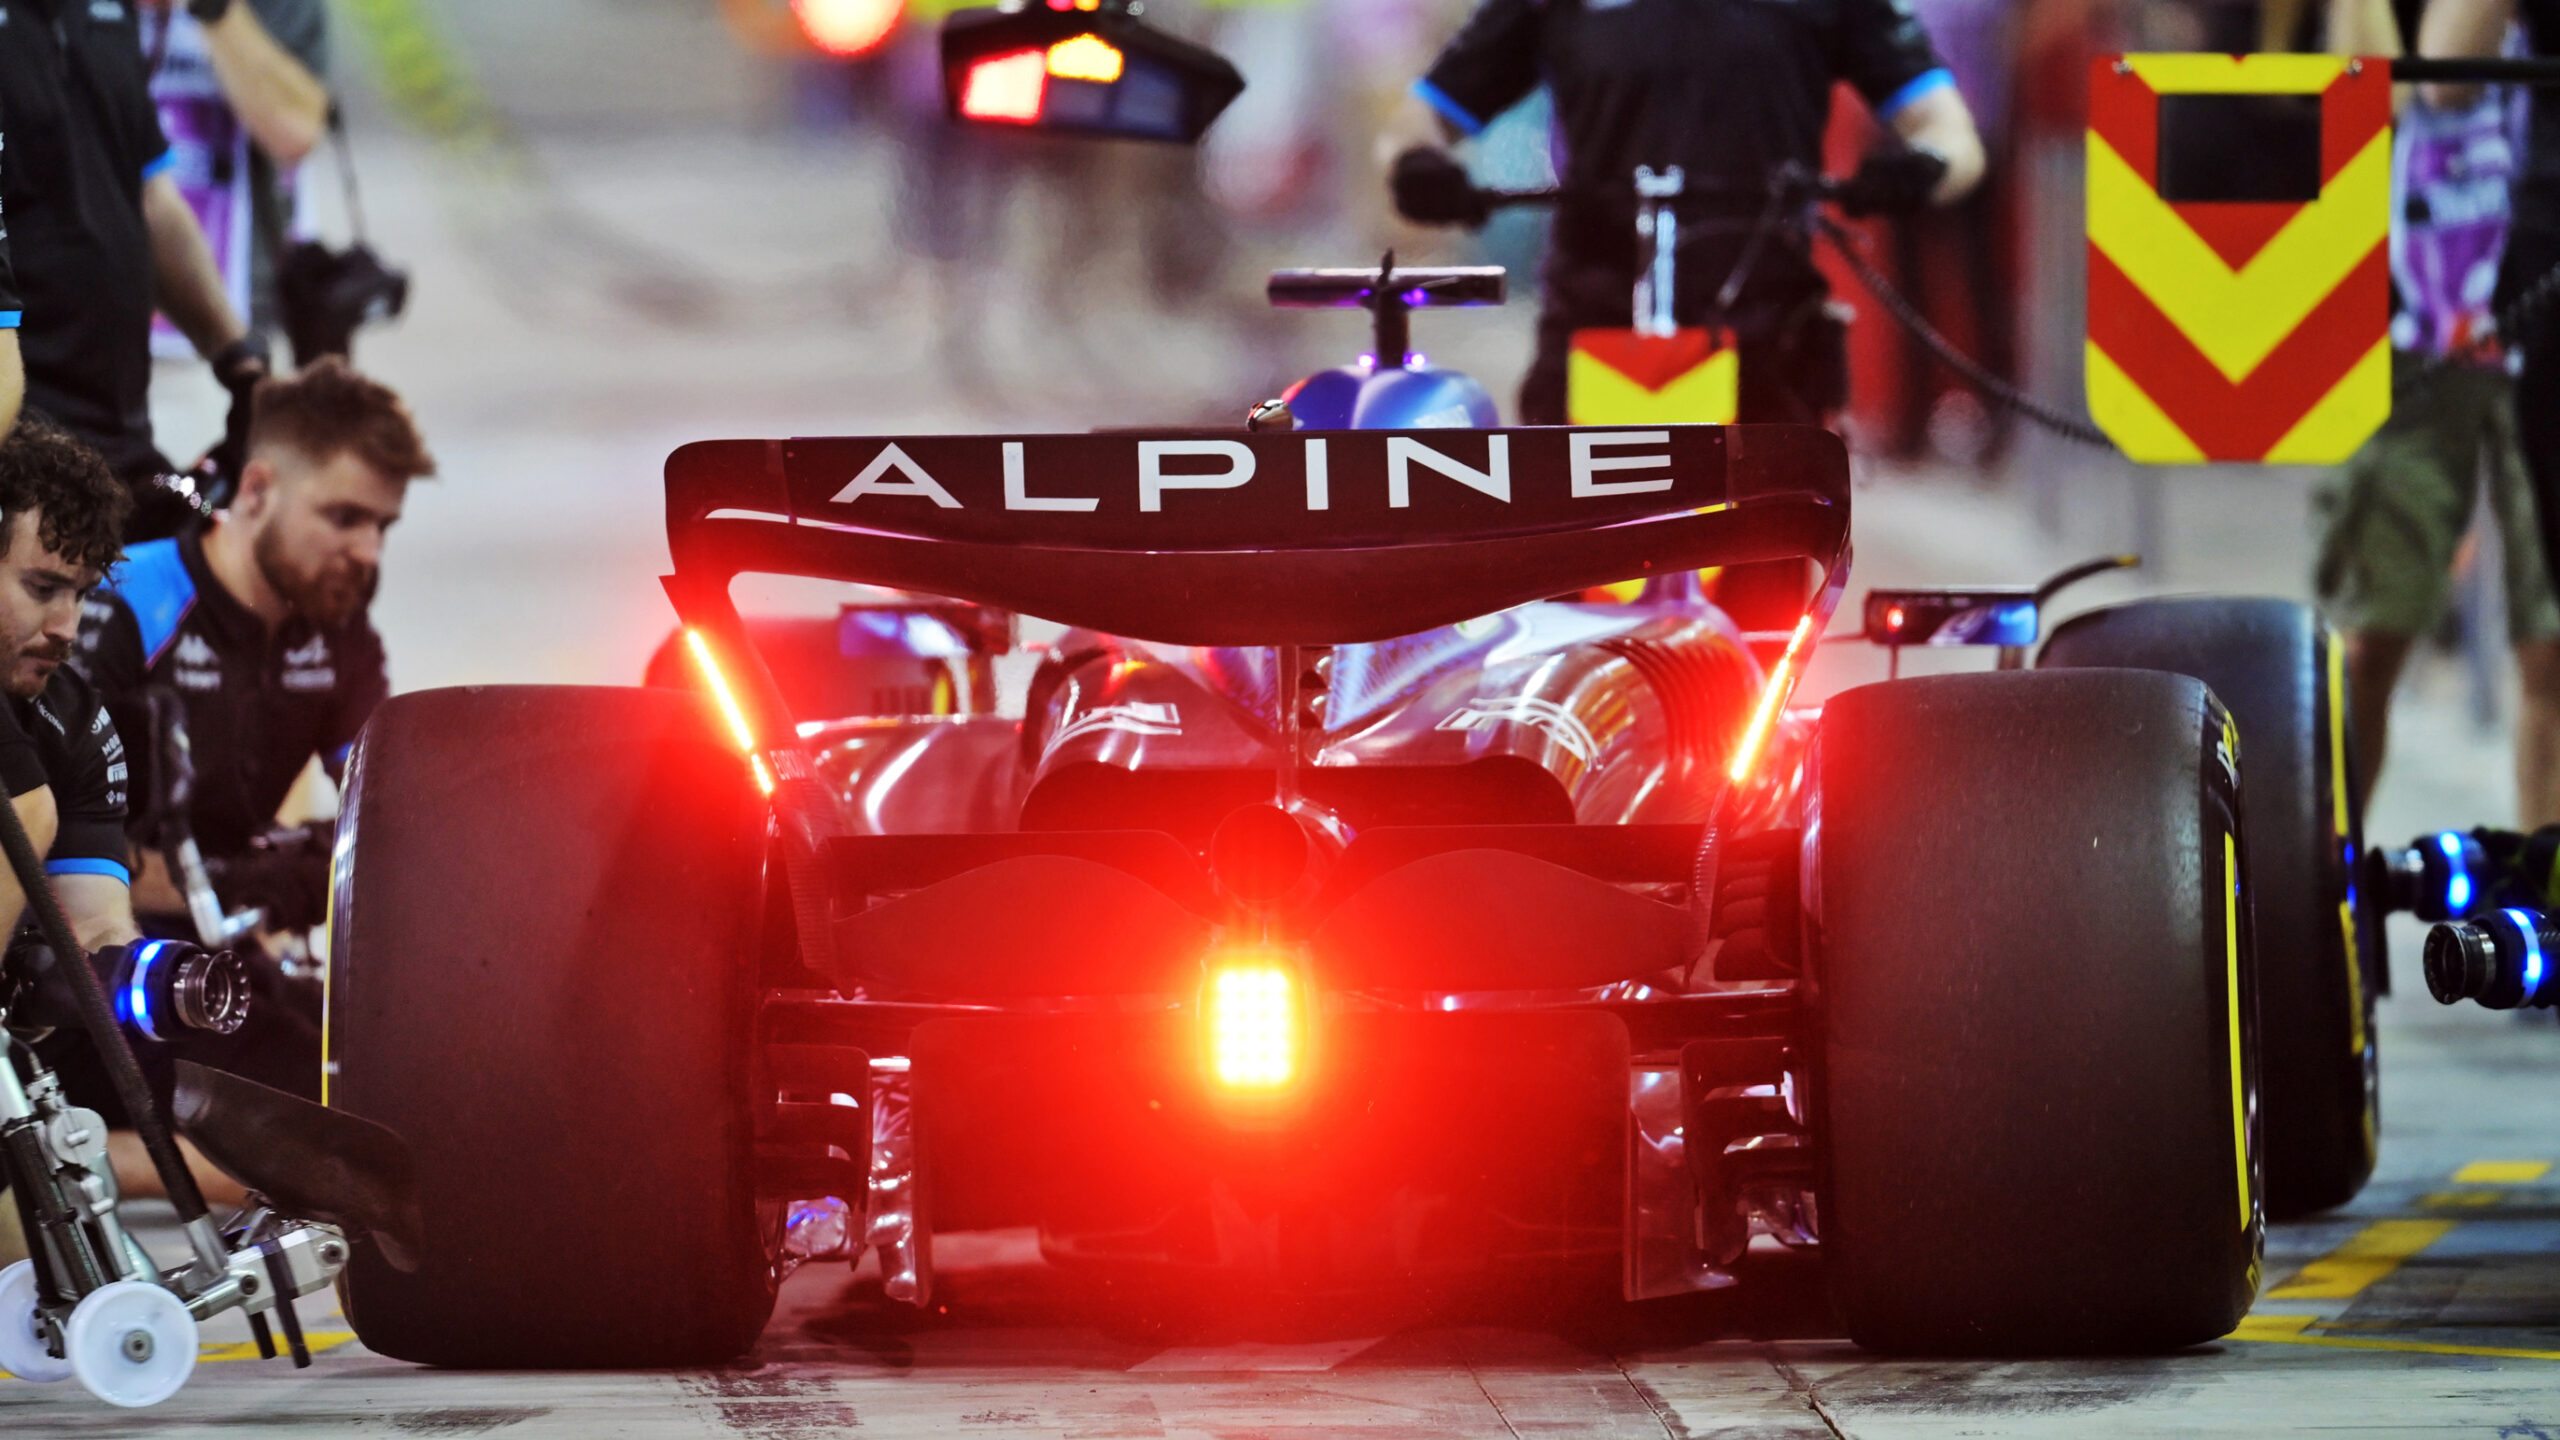 Alpine dispara sobre novas equipes na F1